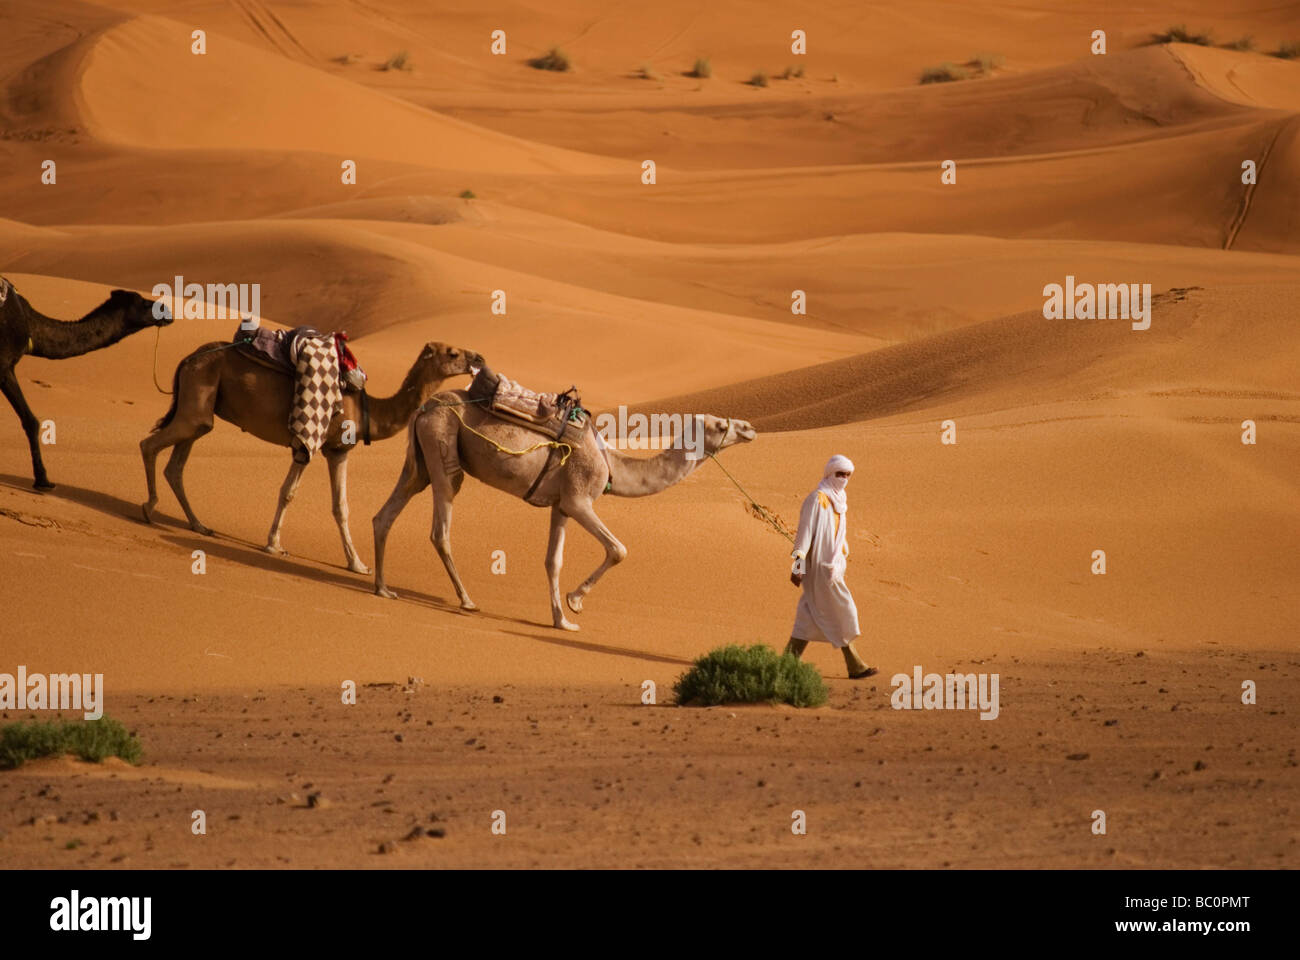 Un homme en costume traditionnel berbère mène un train de chameaux à travers le désert du Sahara, près de Merzouga Maroc Afrique du Nord Banque D'Images